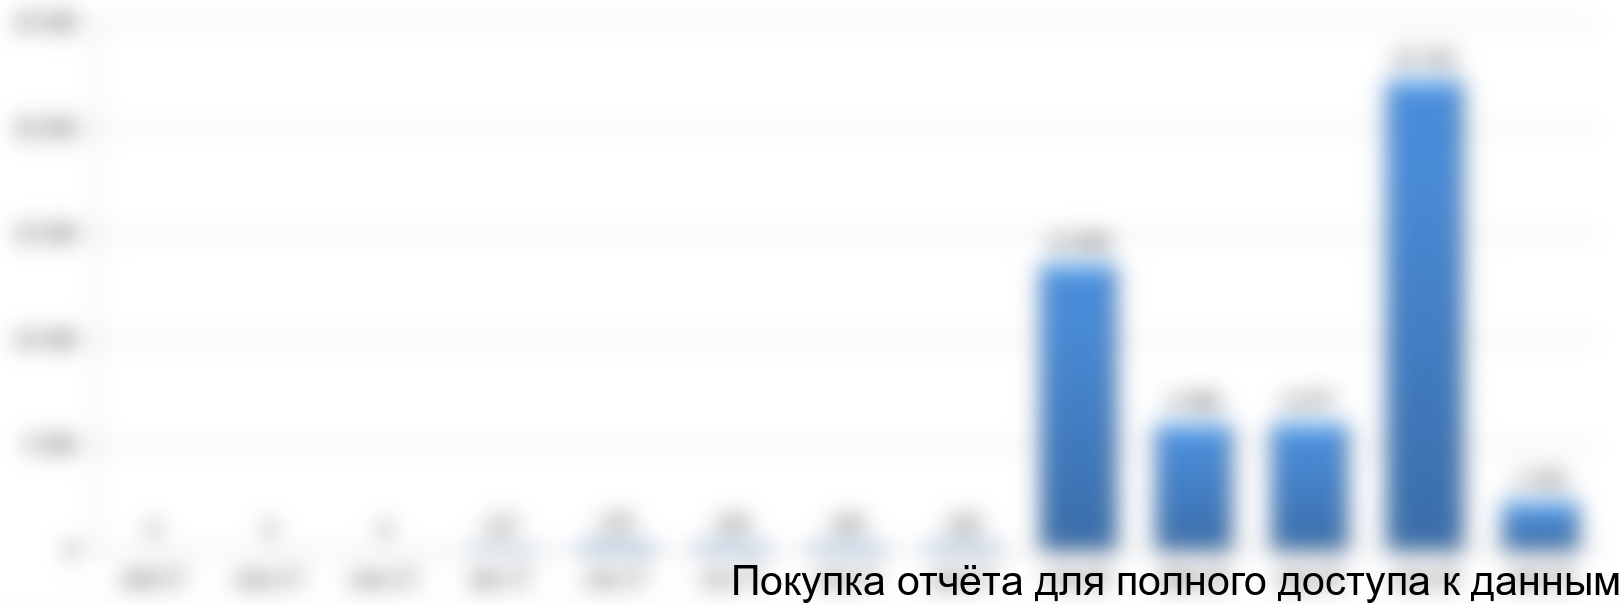 Рисунок 4.4 График финансирования проекта в инвестиционной фазе, тыс. руб.